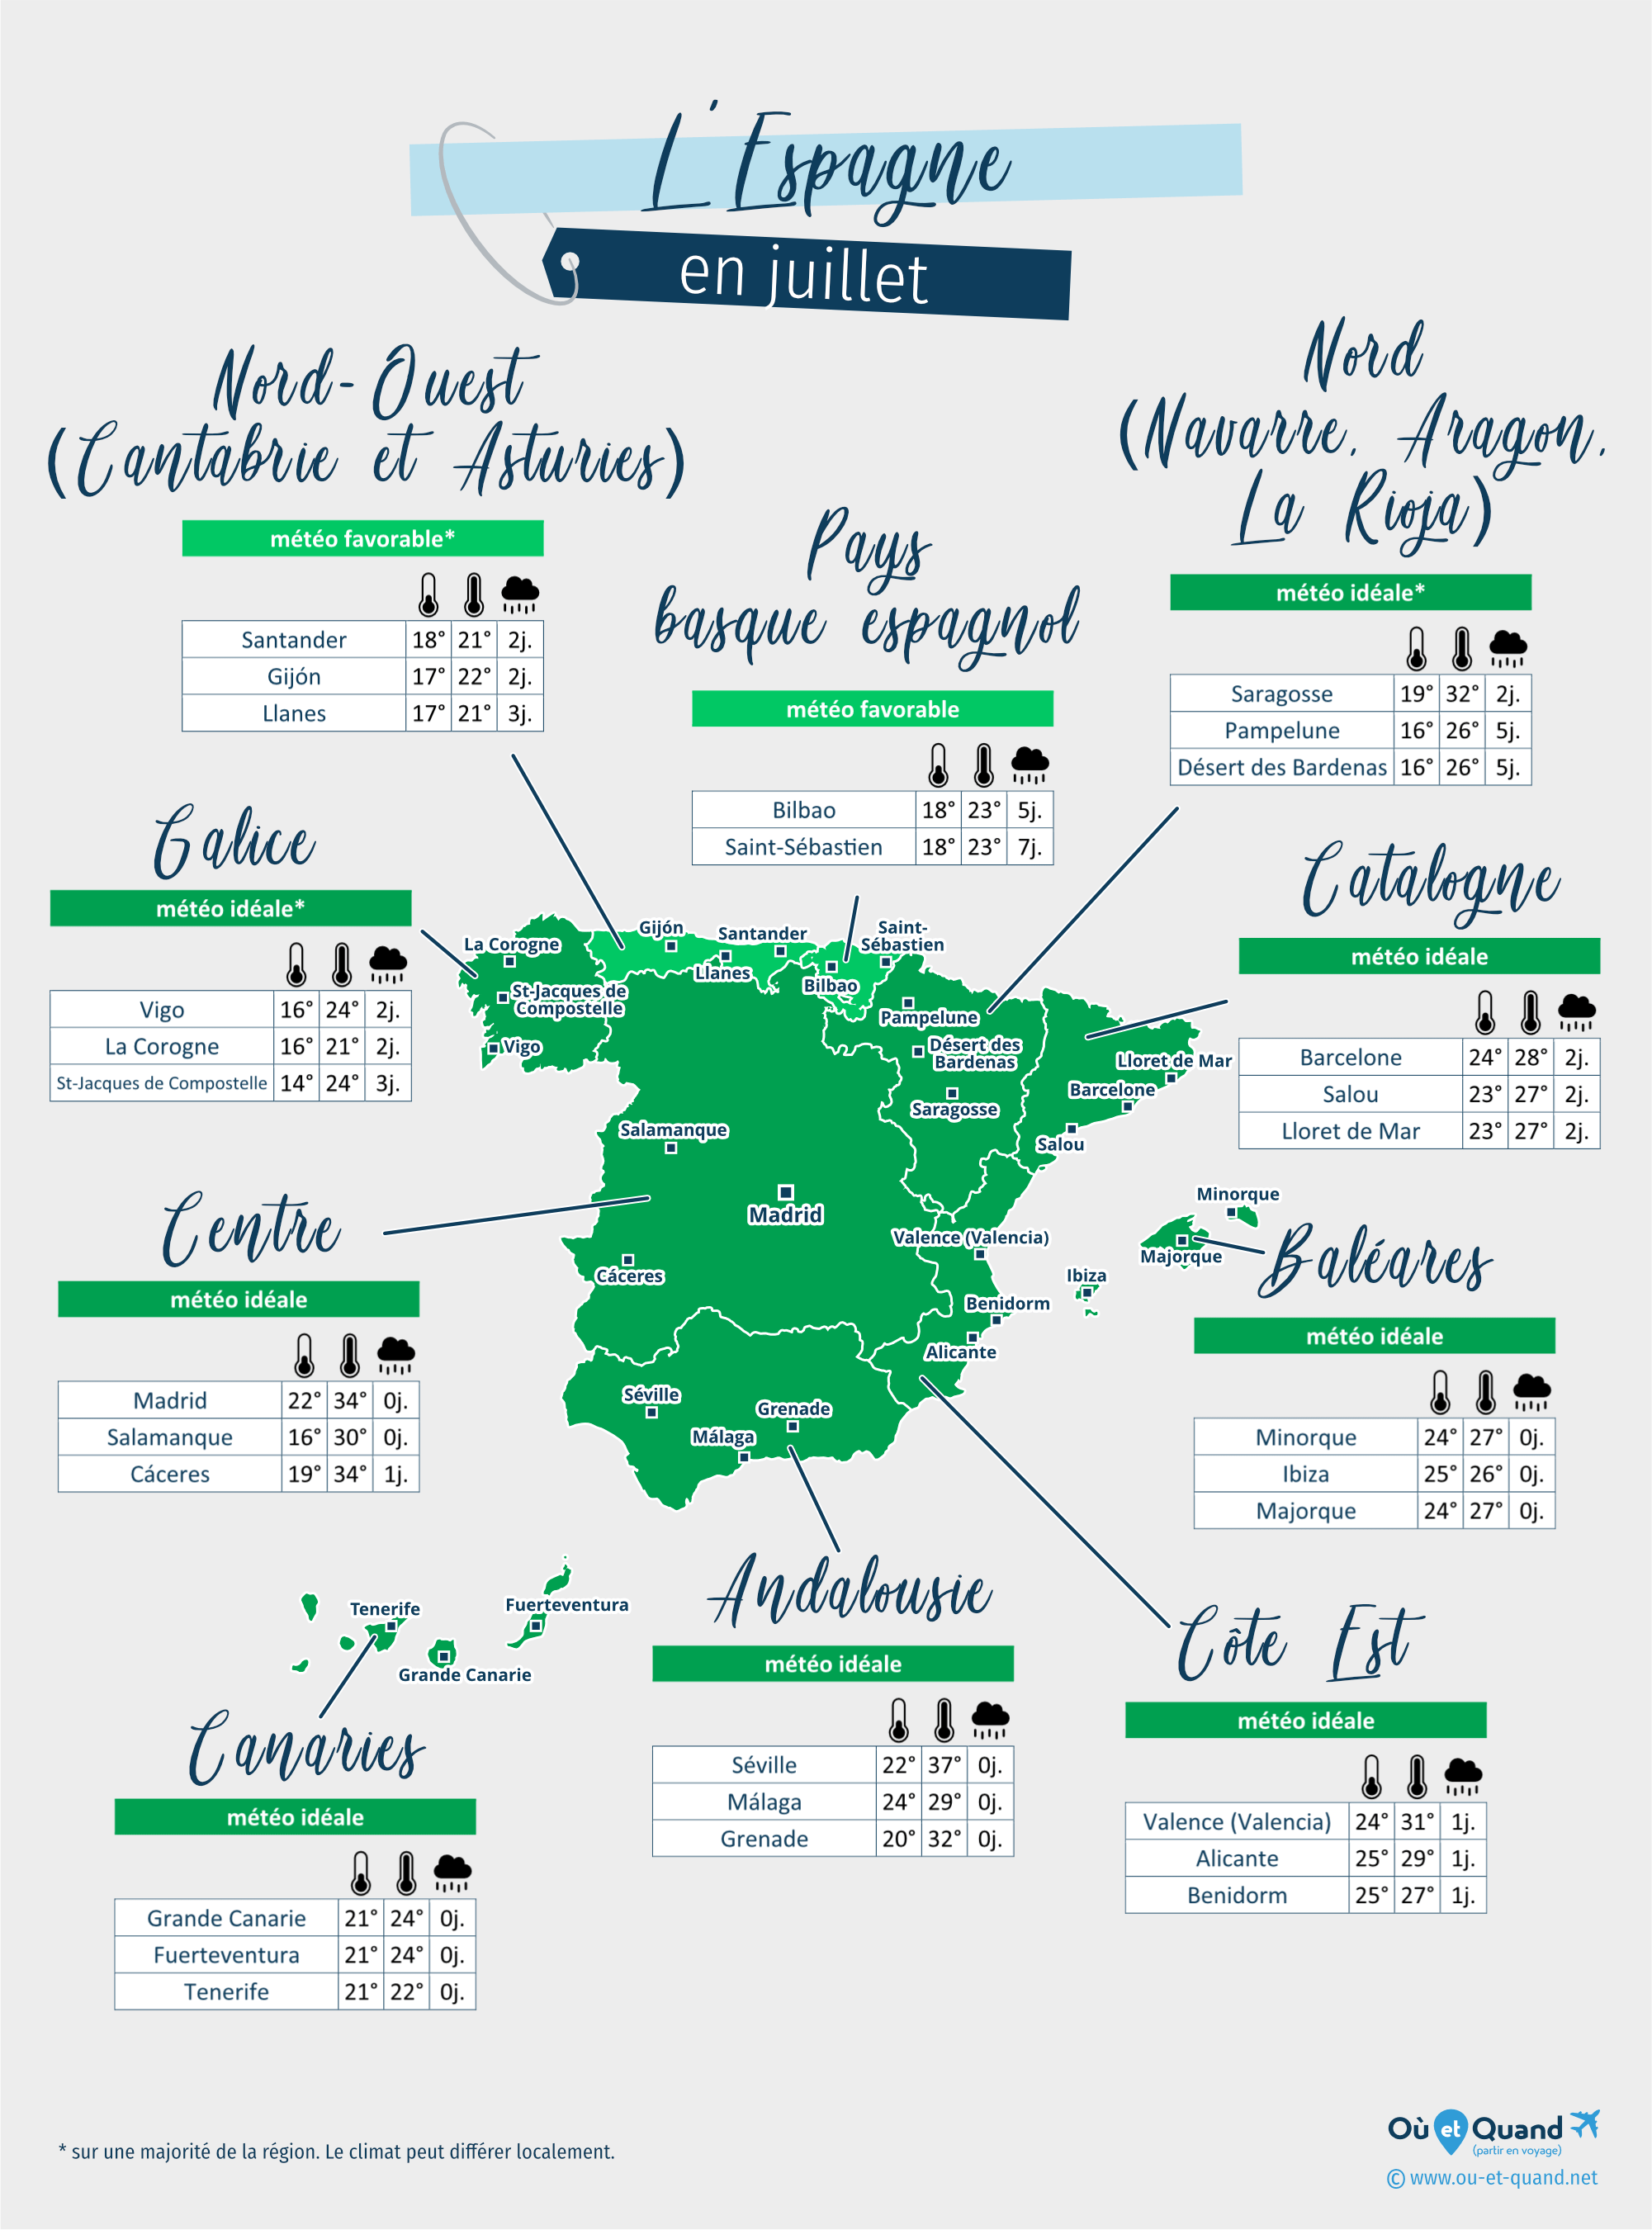 Carte de la météo en juillet dans les régions de l'Espagne